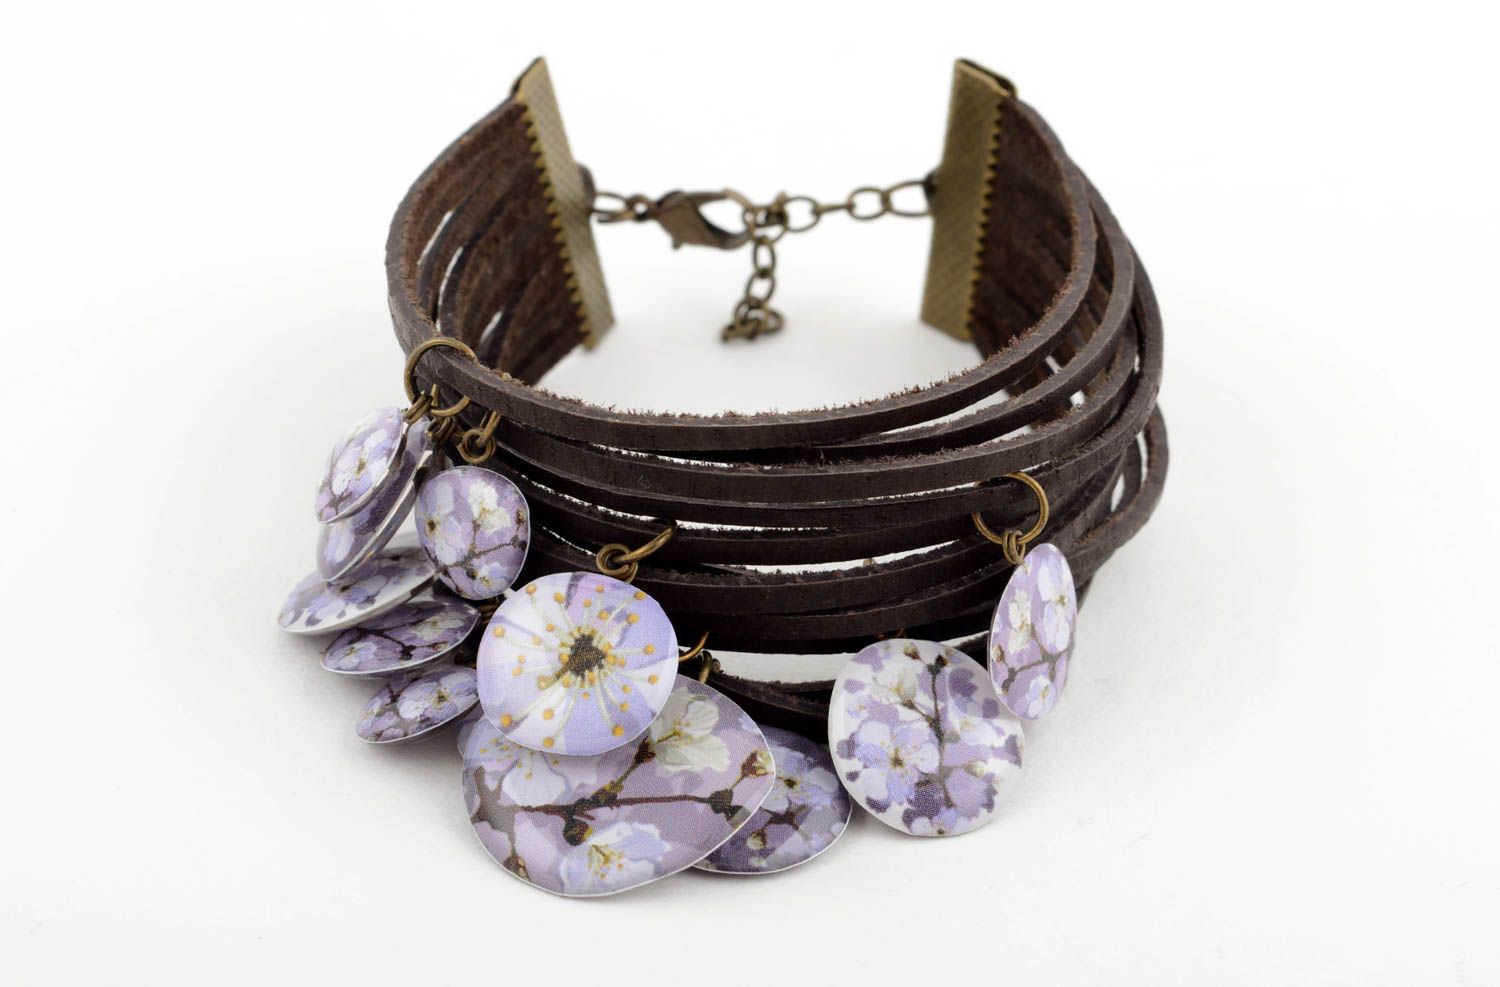 Stylish handmade leather bracelet leather cord bracelet fashion trends photo 1